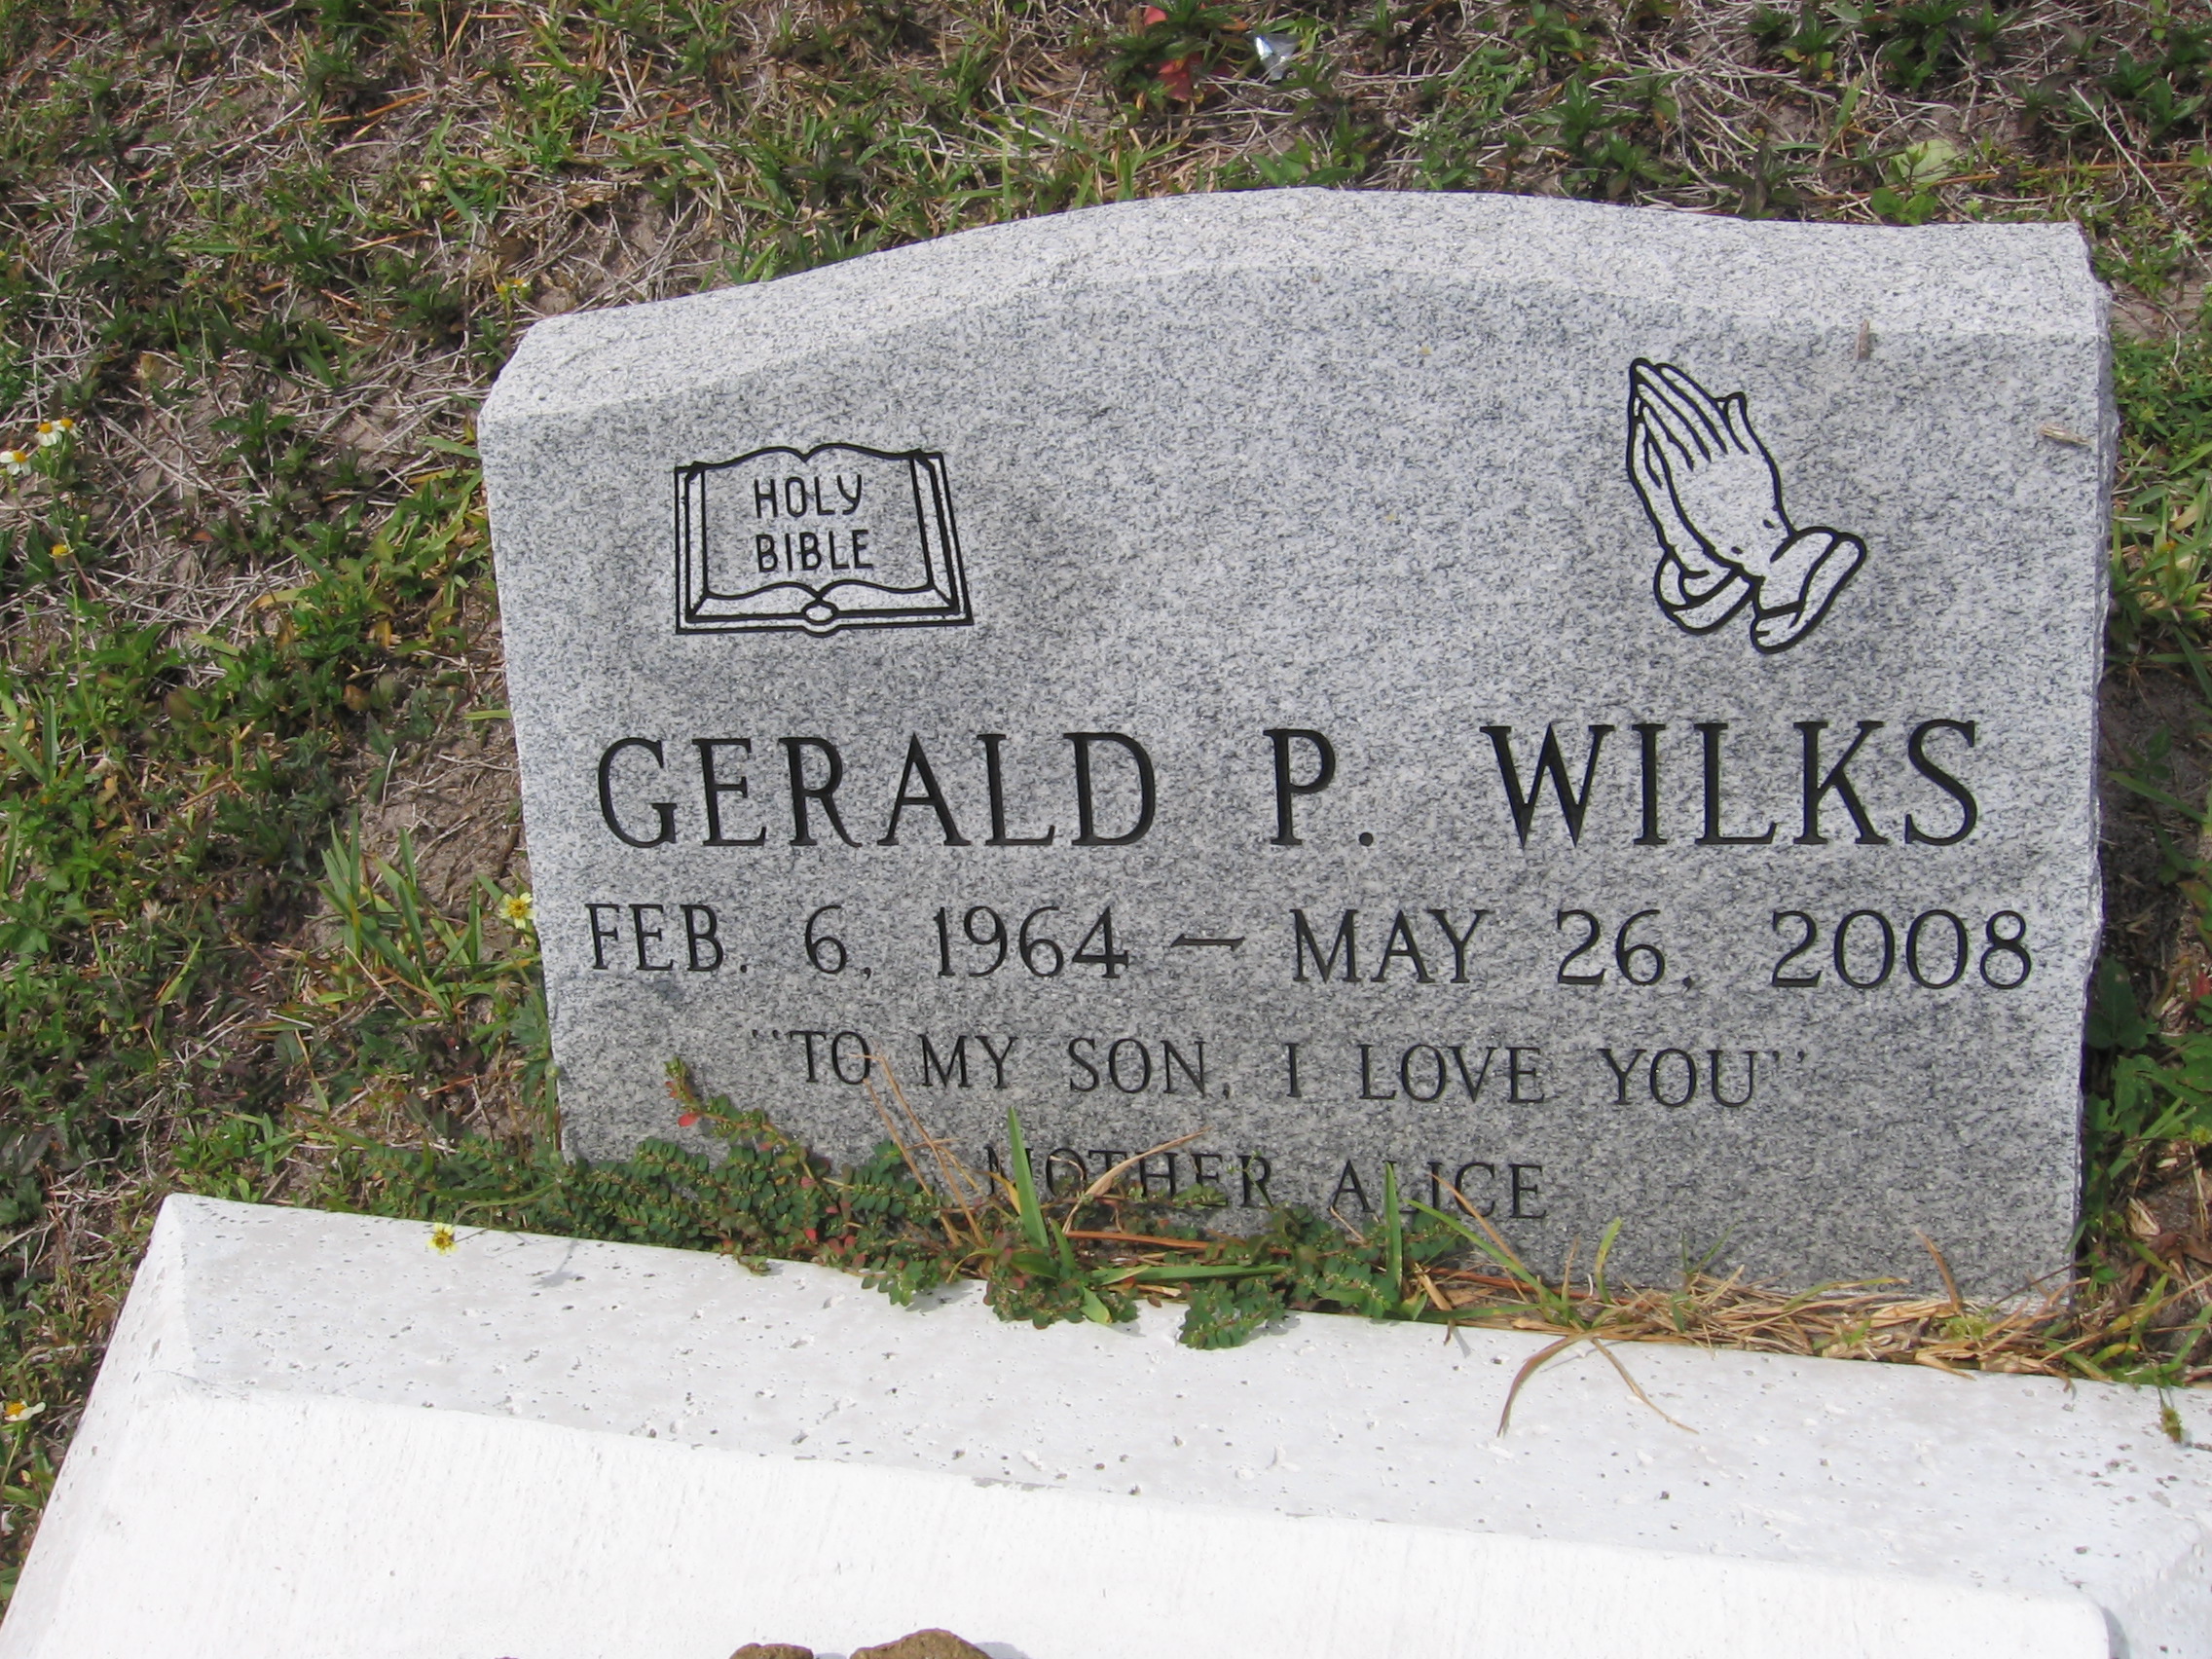 Gerald P Wilks